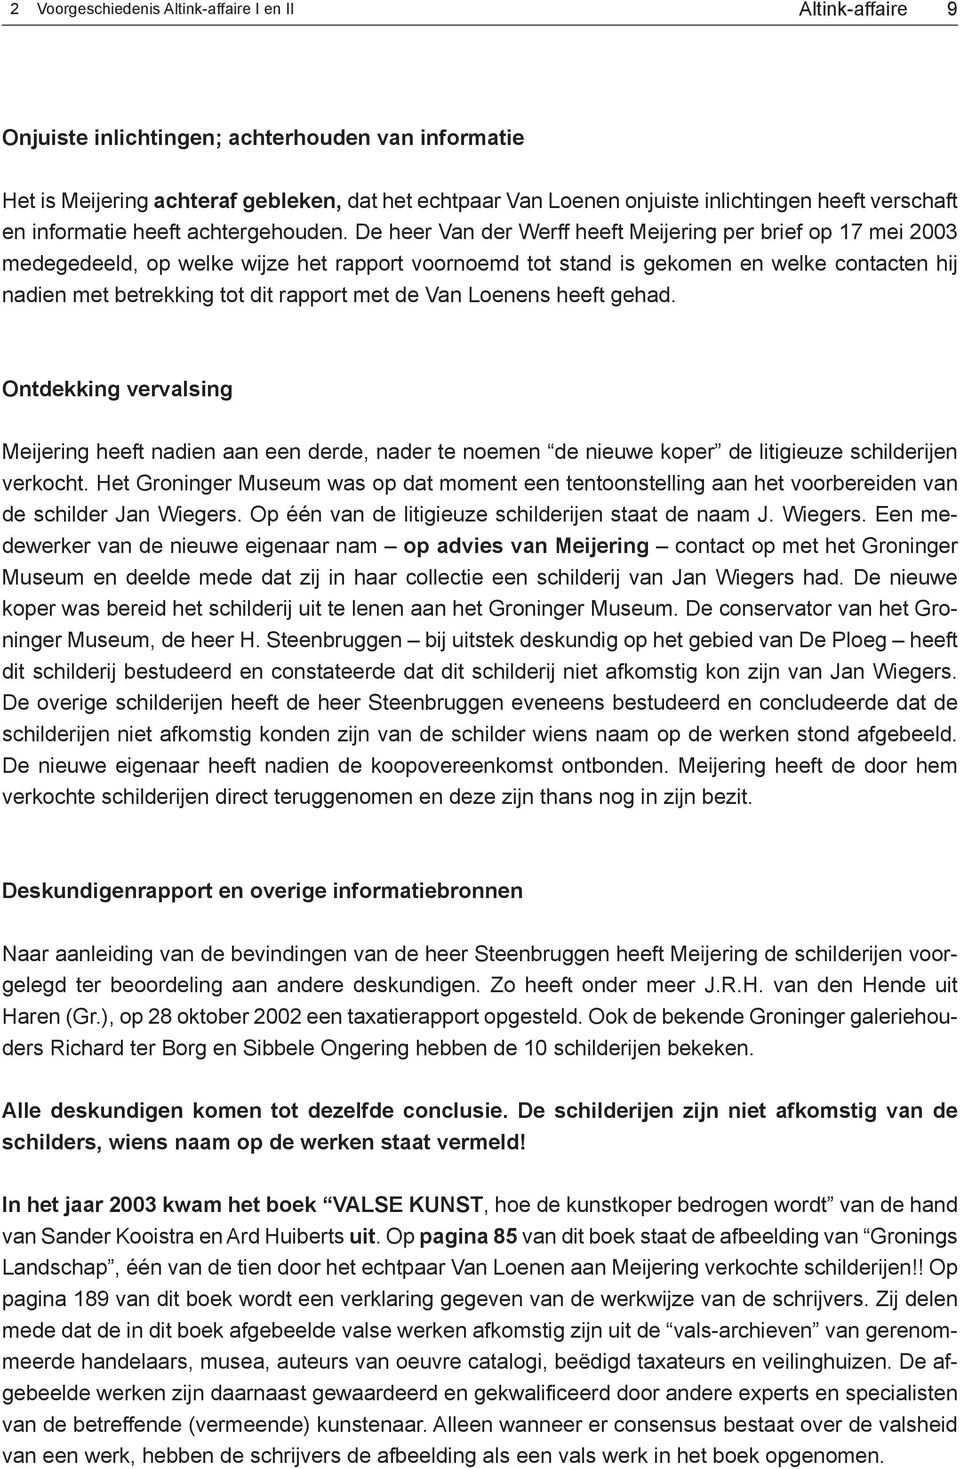 De heer Van der Werff heeft Meijering per brief op 17 mei 2003 medegedeeld, op welke wijze het rapport voornoemd tot stand is gekomen en welke contacten hij nadien met betrekking tot dit rapport met